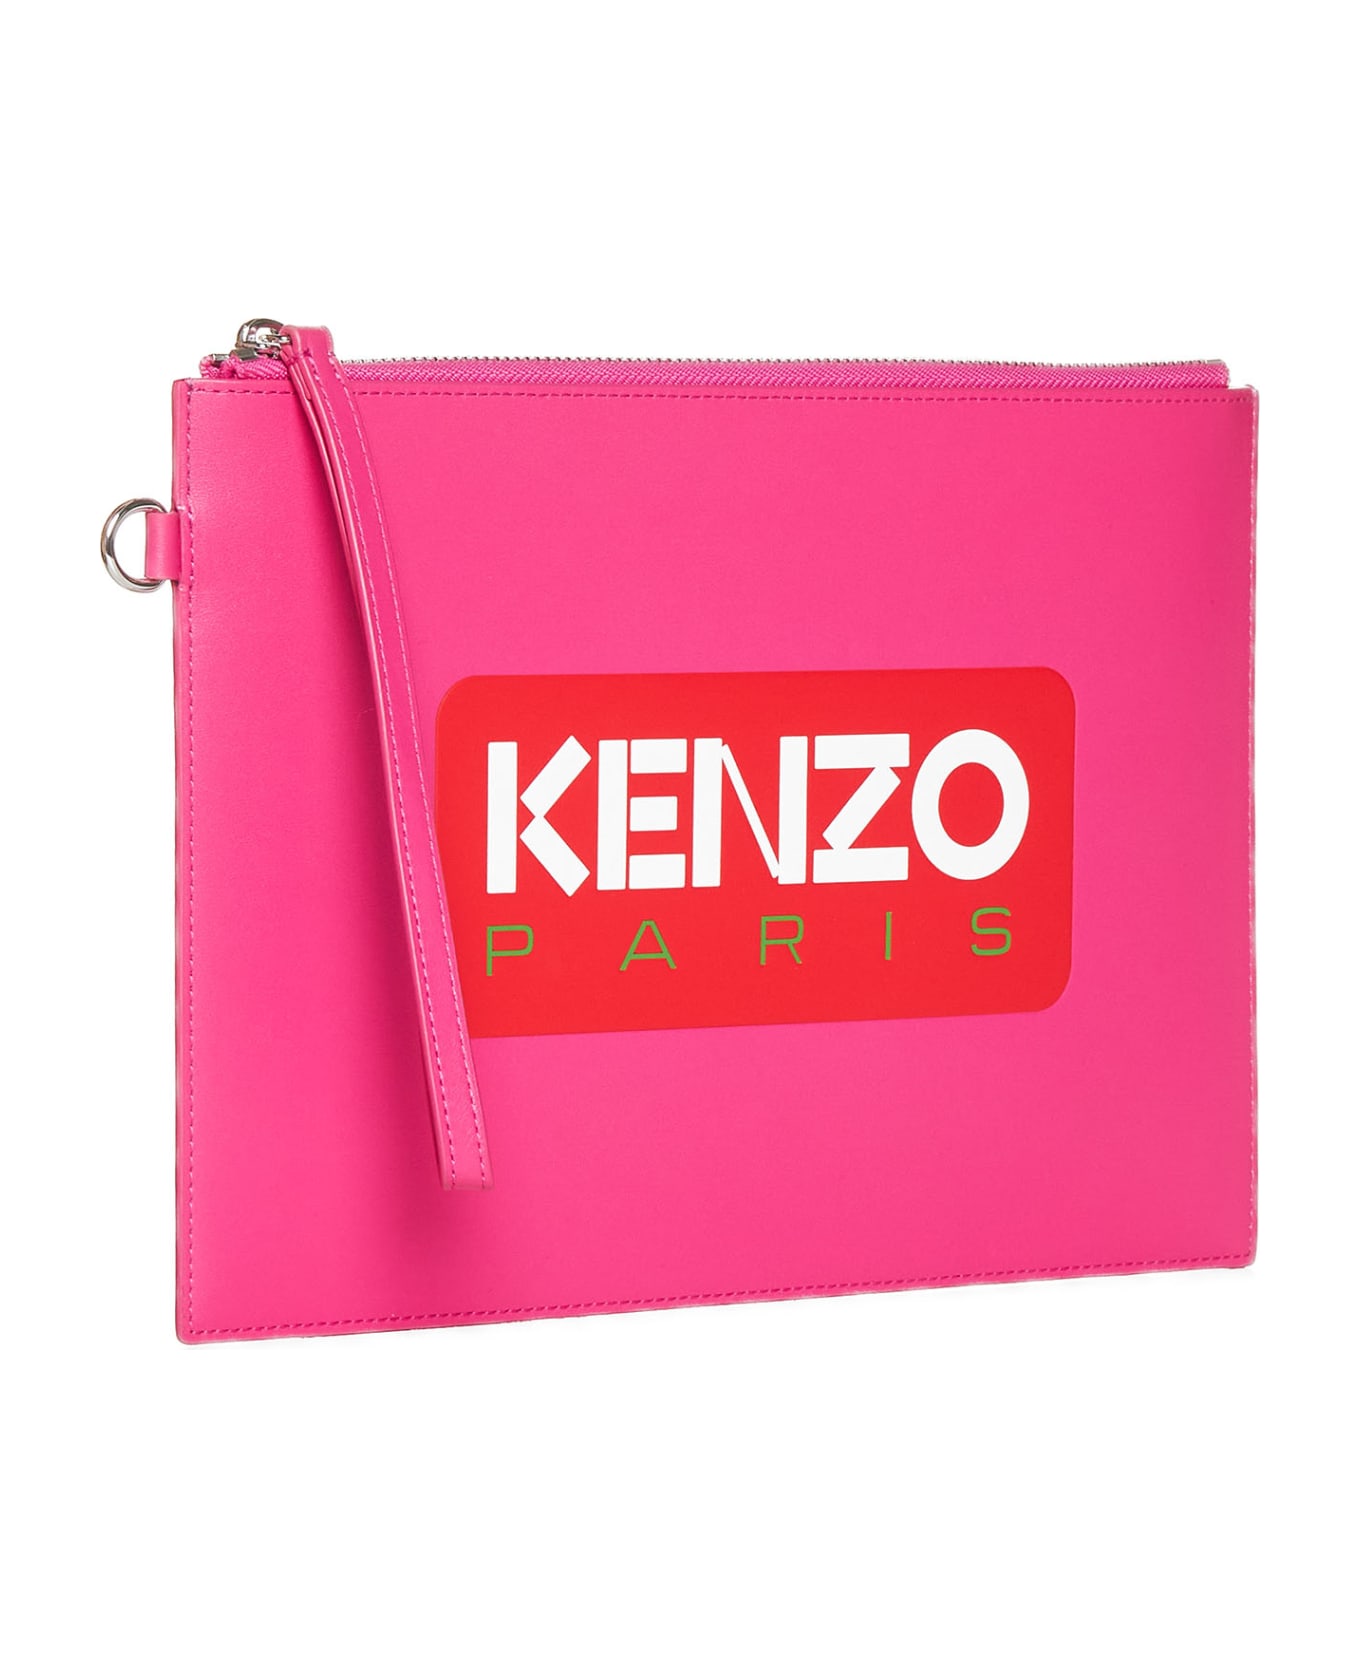 Kenzo Clutch Bag - Deep fuschia